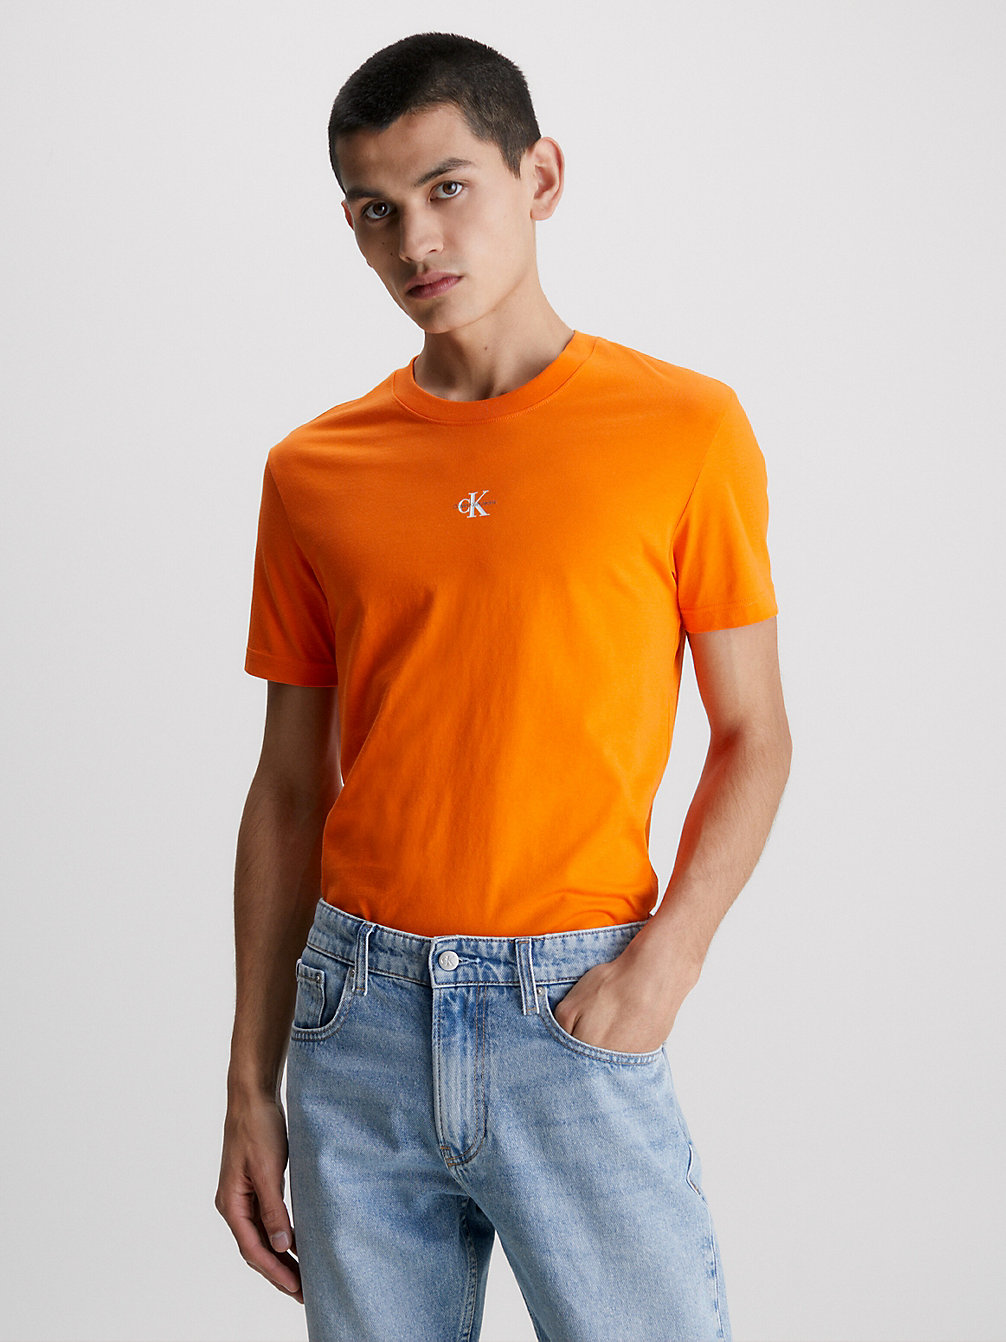 T-Shirt En Coton Bio Avec Monogramme > VIBRANT ORANGE > undefined hommes > Calvin Klein